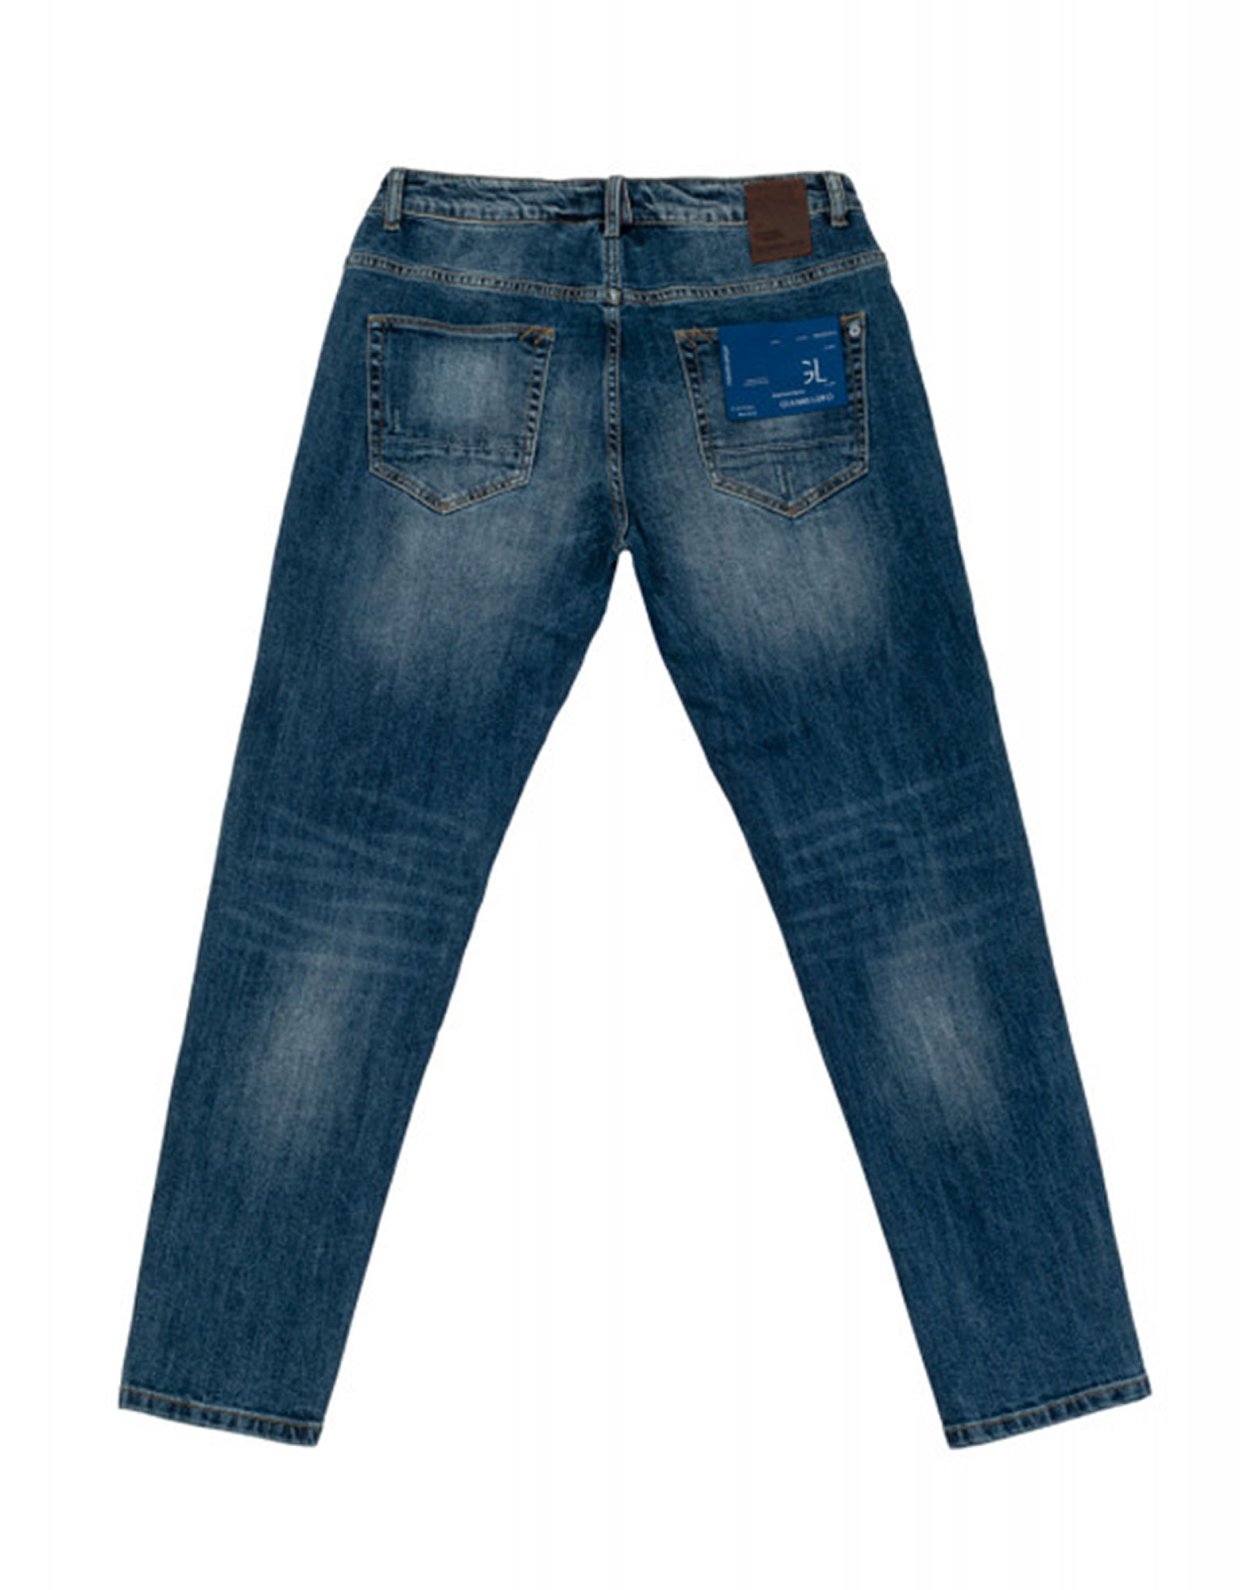 Gianni Lupo Bruce medium wash jeans